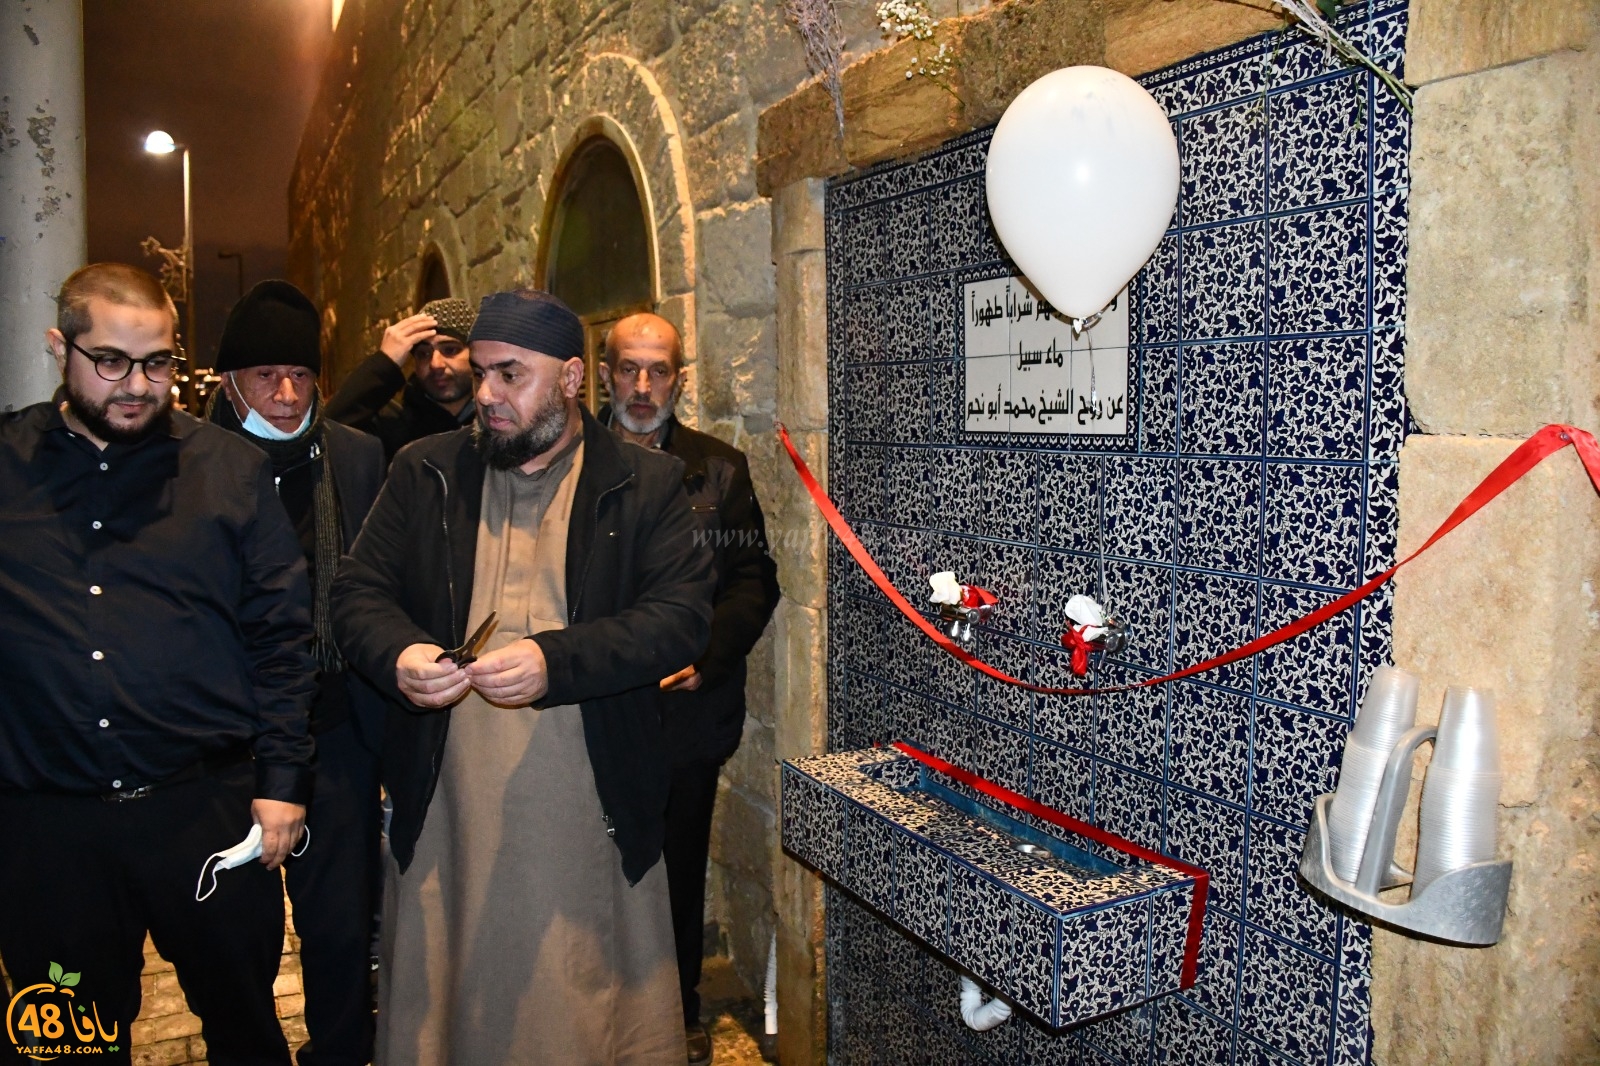  صور: افتتاح ماء سبيل الشيخ محمد أبو نجم في مسجد البحر